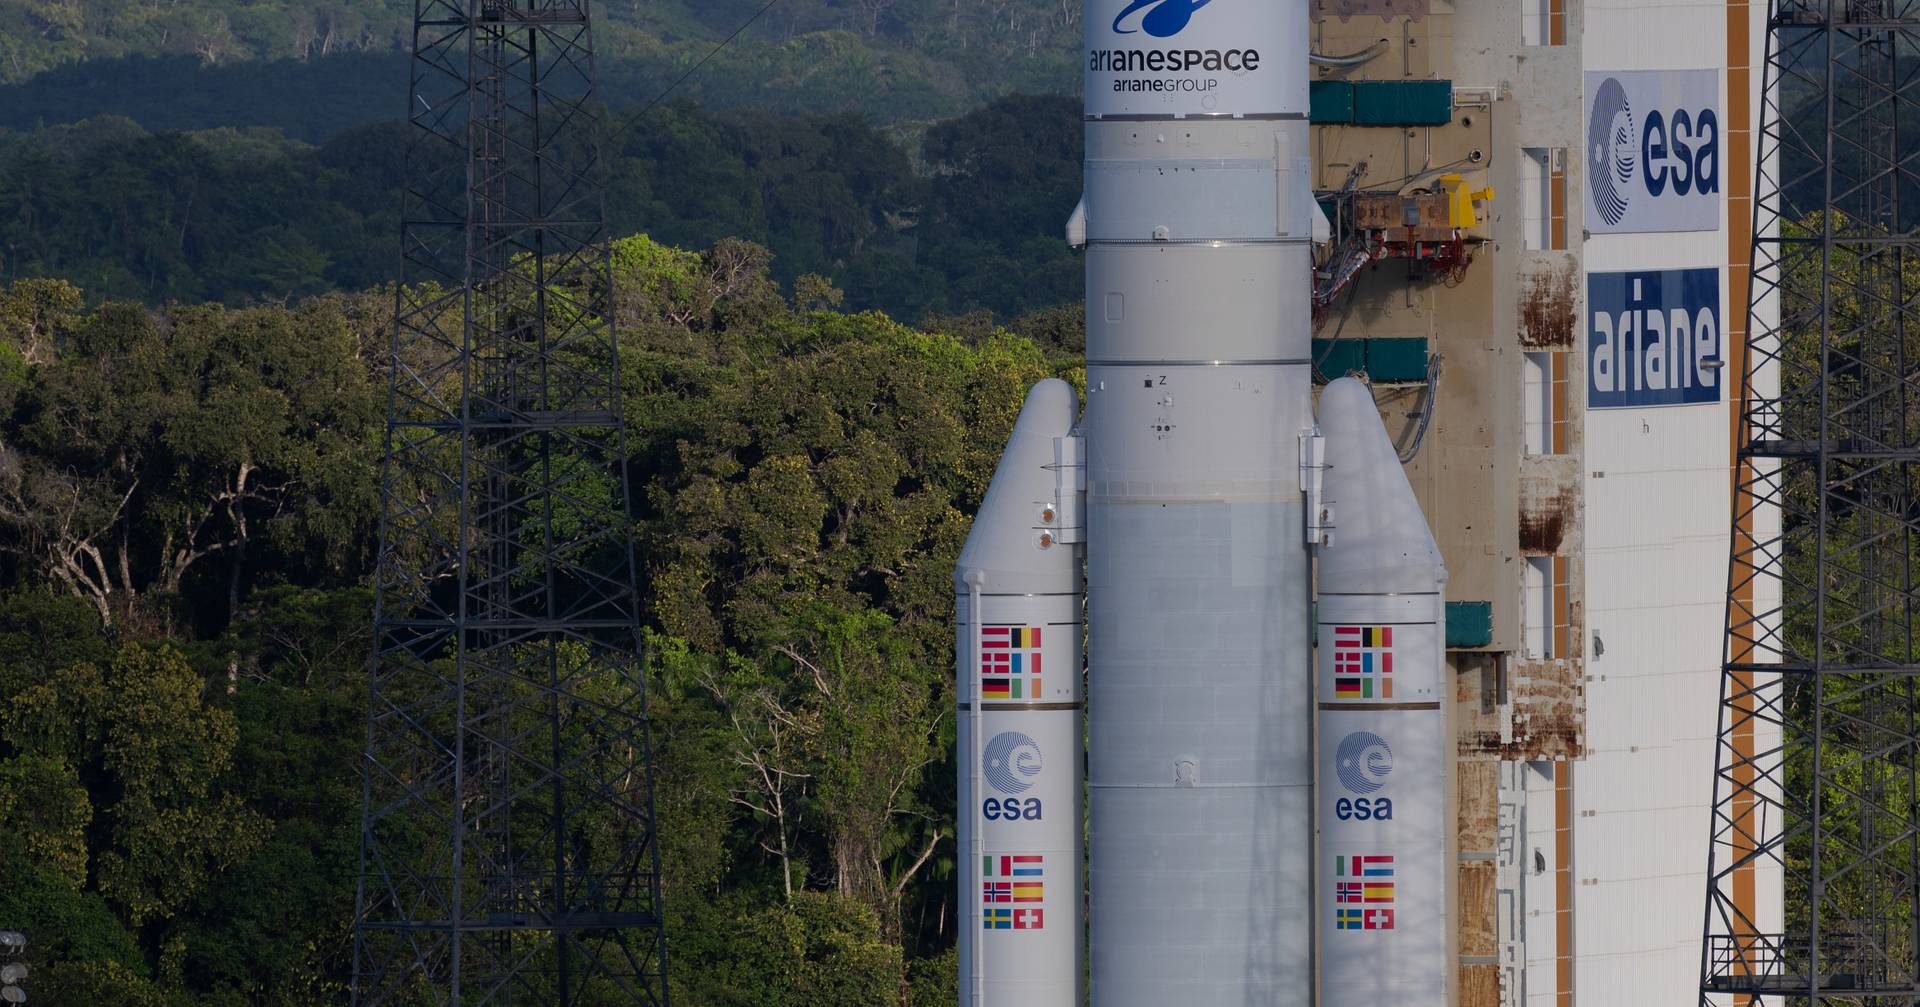 Lancement retardé d’une sonde de technologie portugaise vers Jupiter